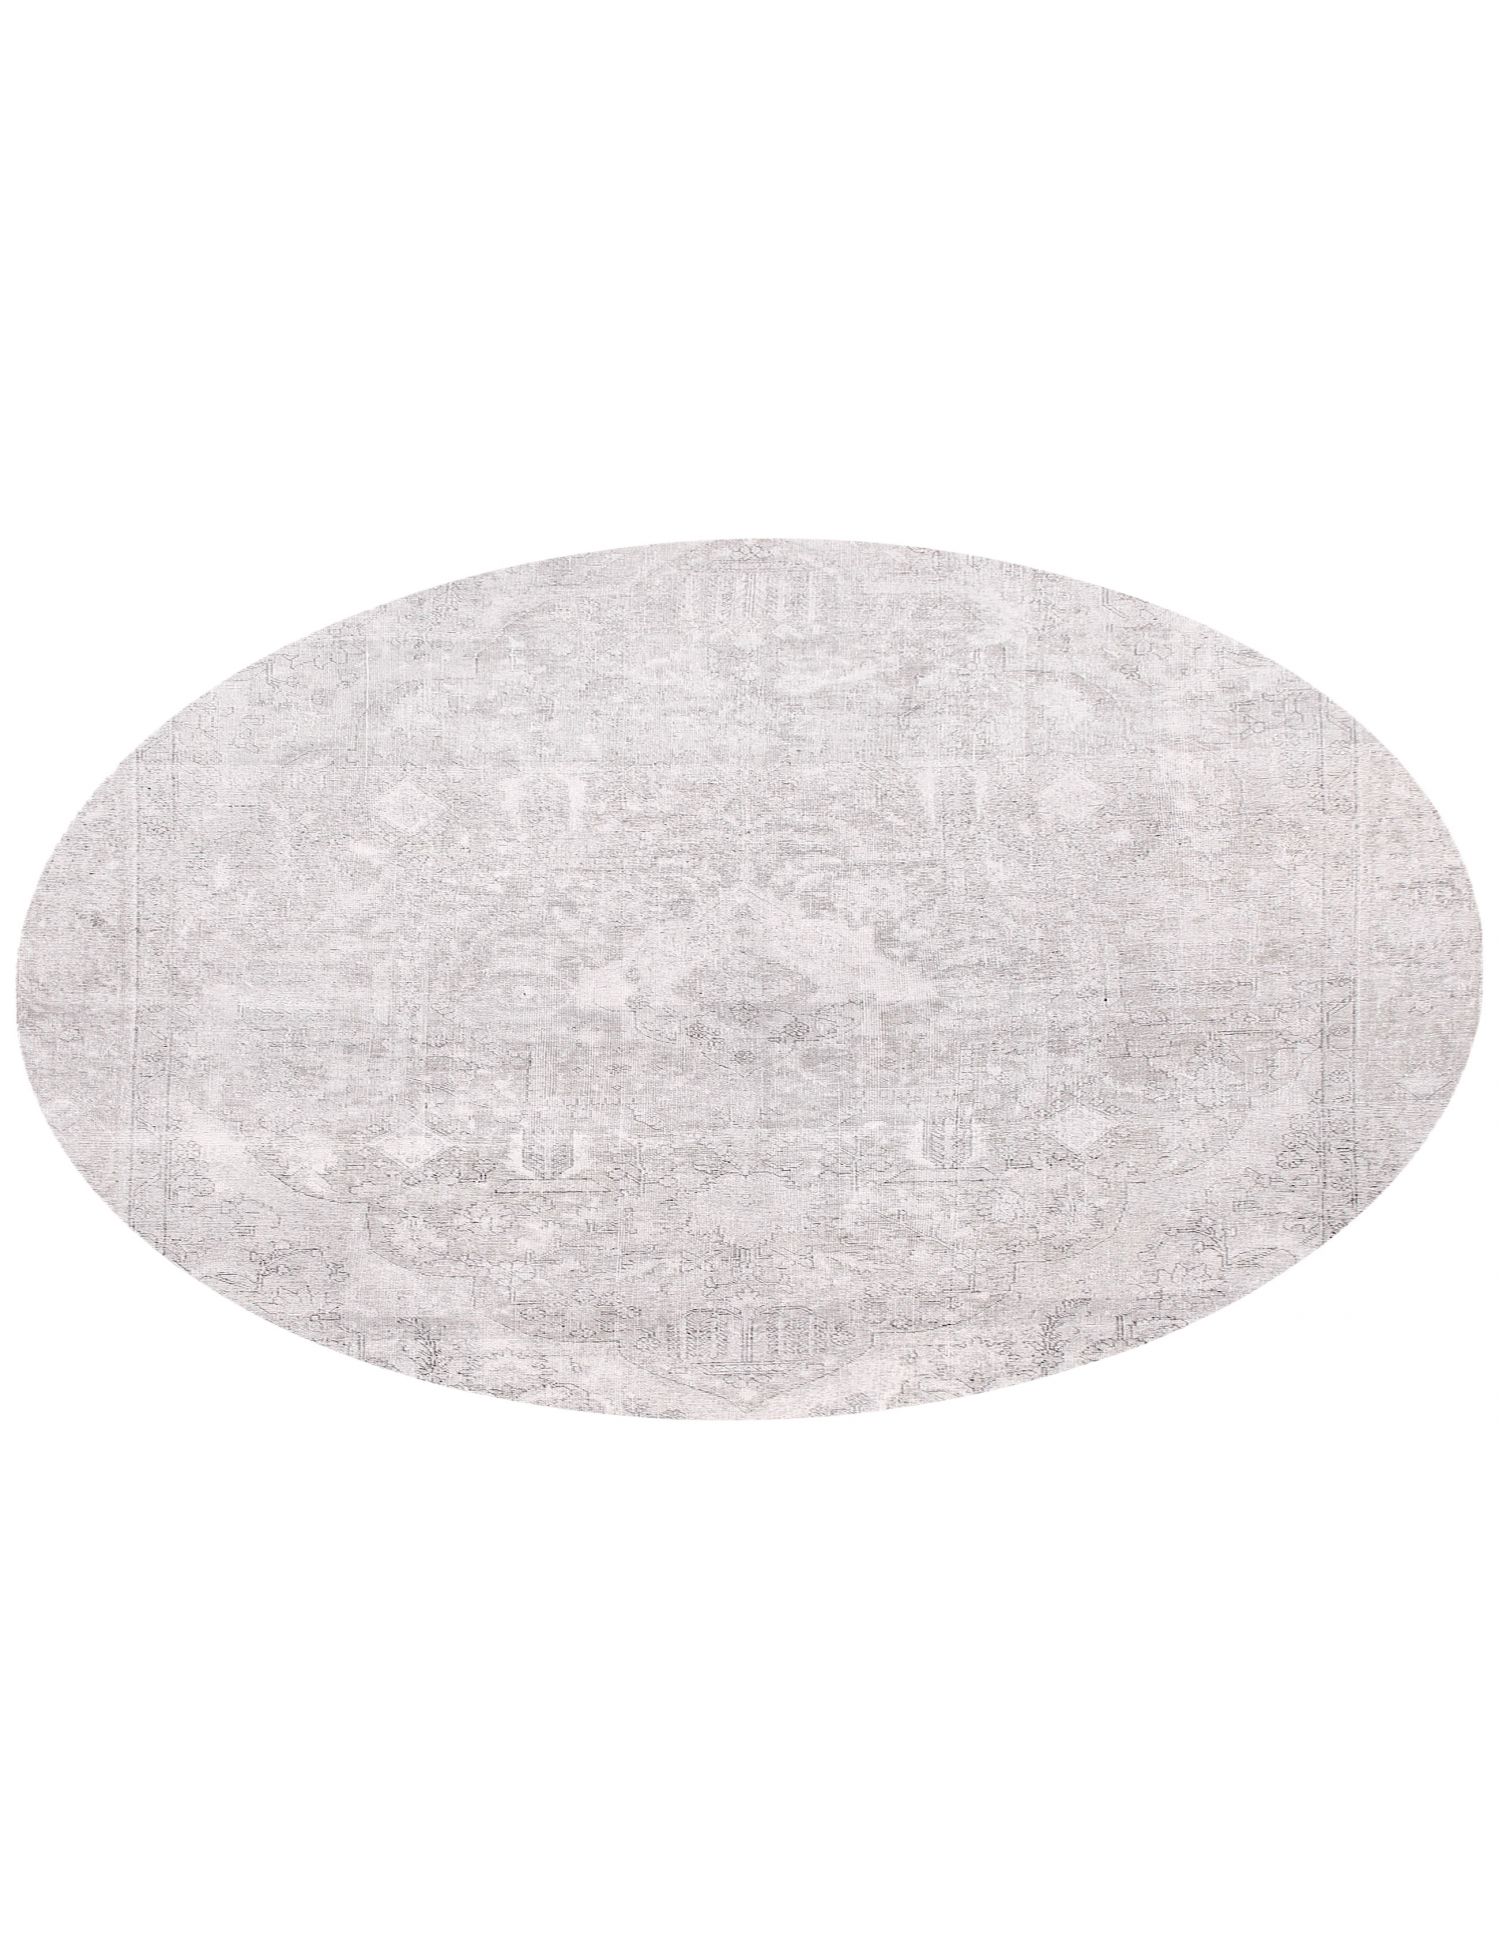 Rund  Vintage Teppich  grau <br/>224 x 224 cm